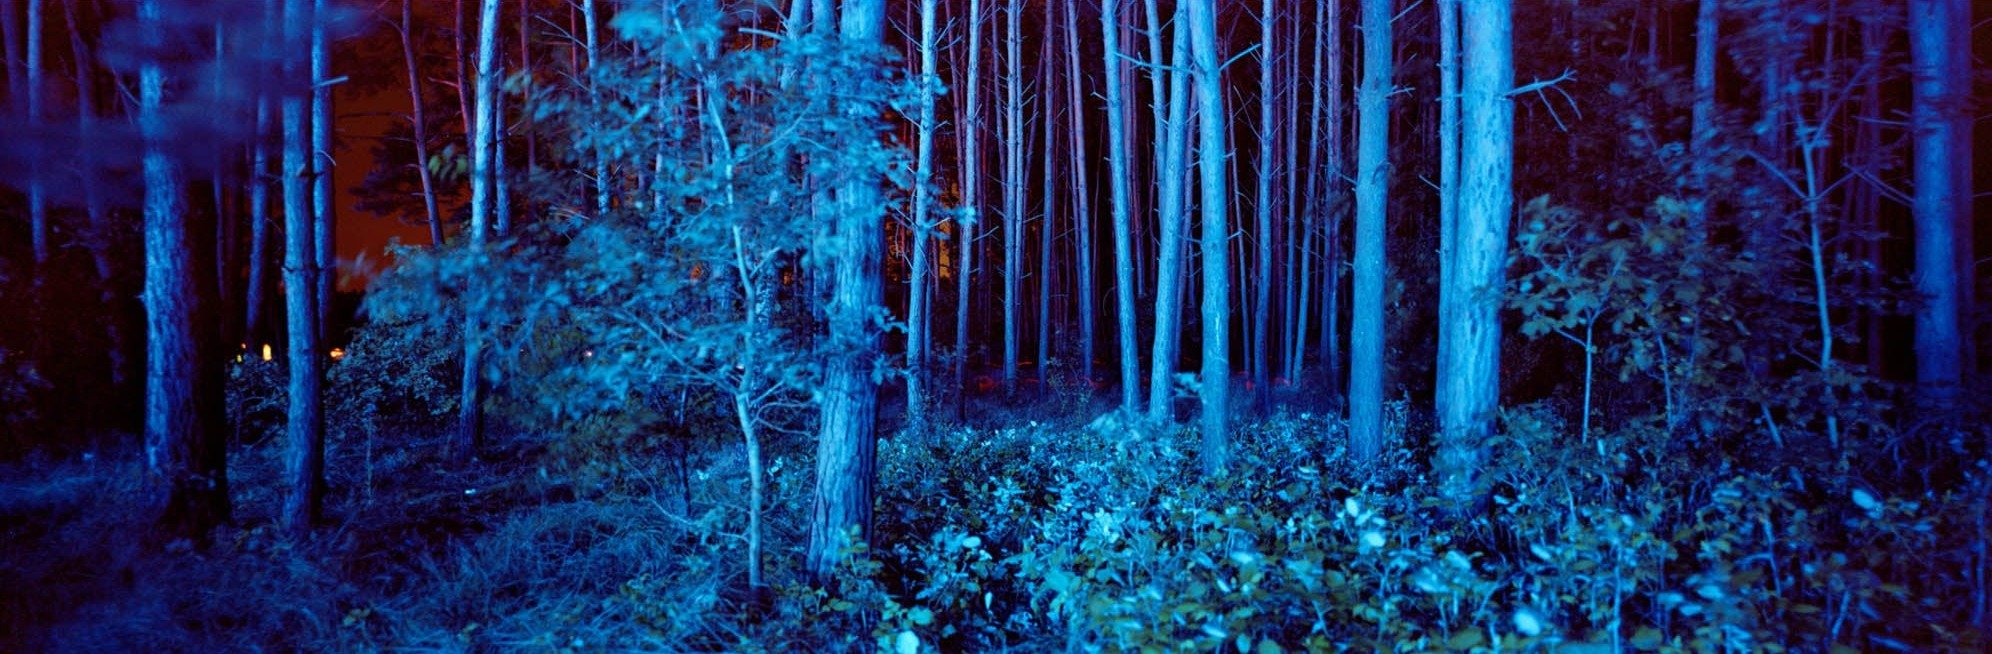 BLUE FOREST, DEUTSCHLAND